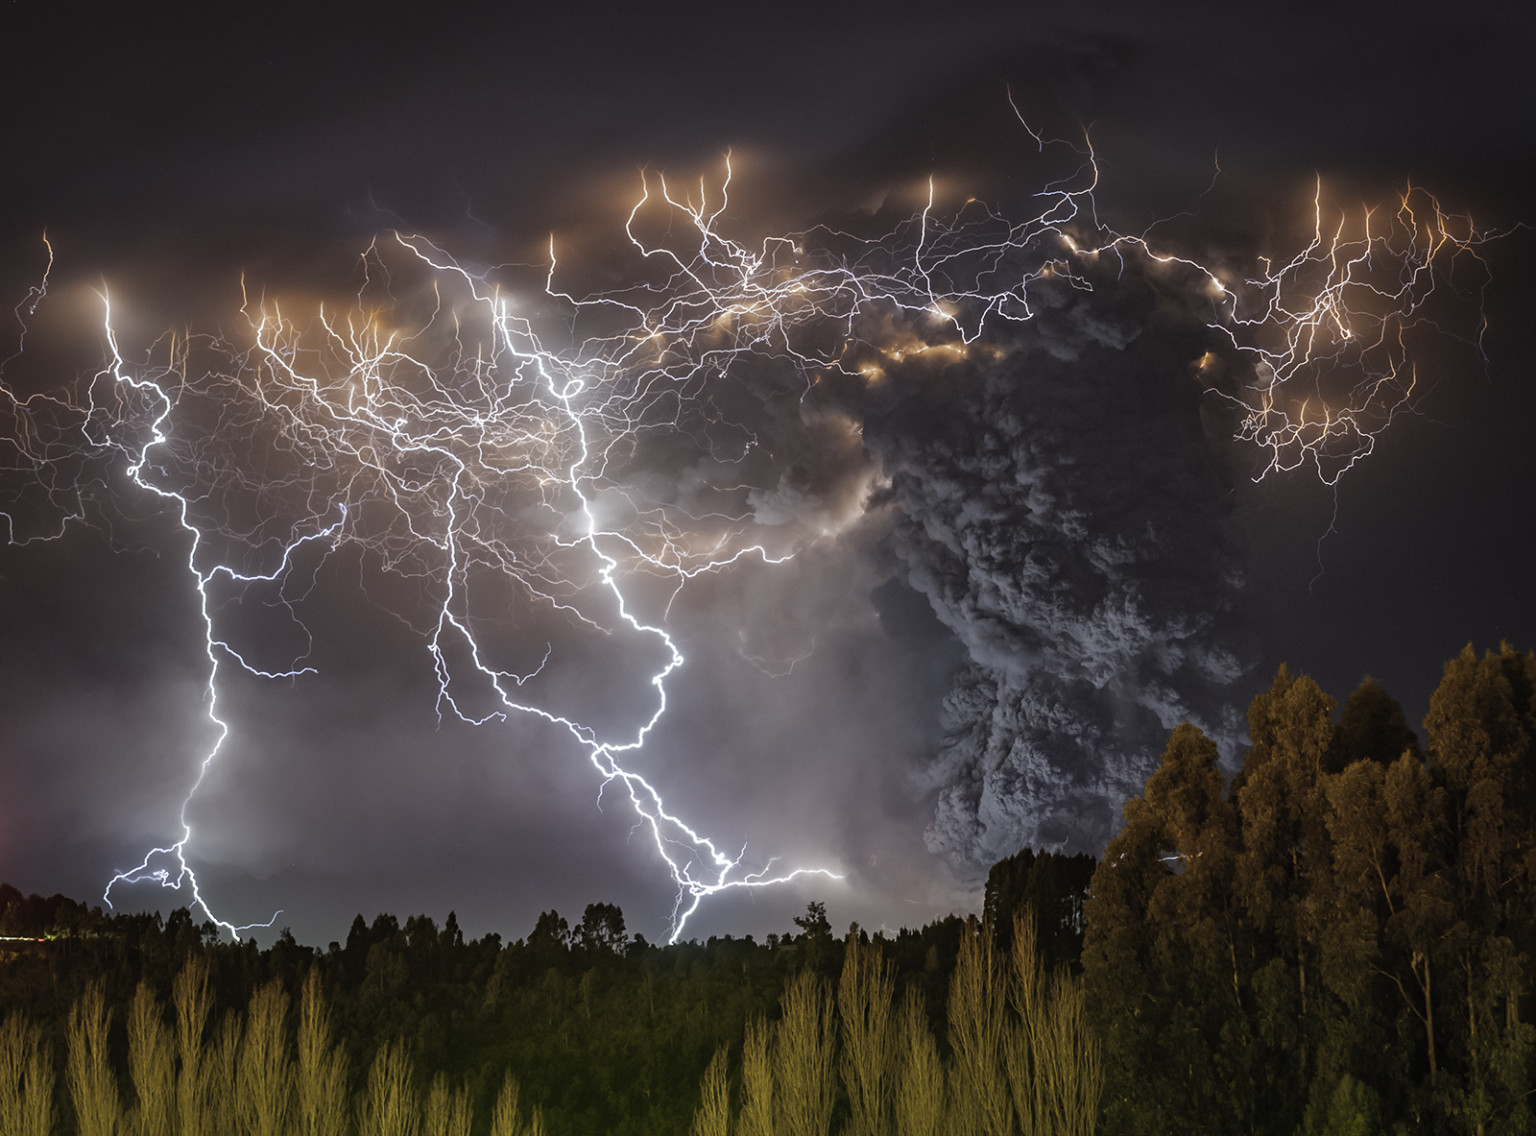 Мощь природы в атмосферных фотографиях Франциско Негрони